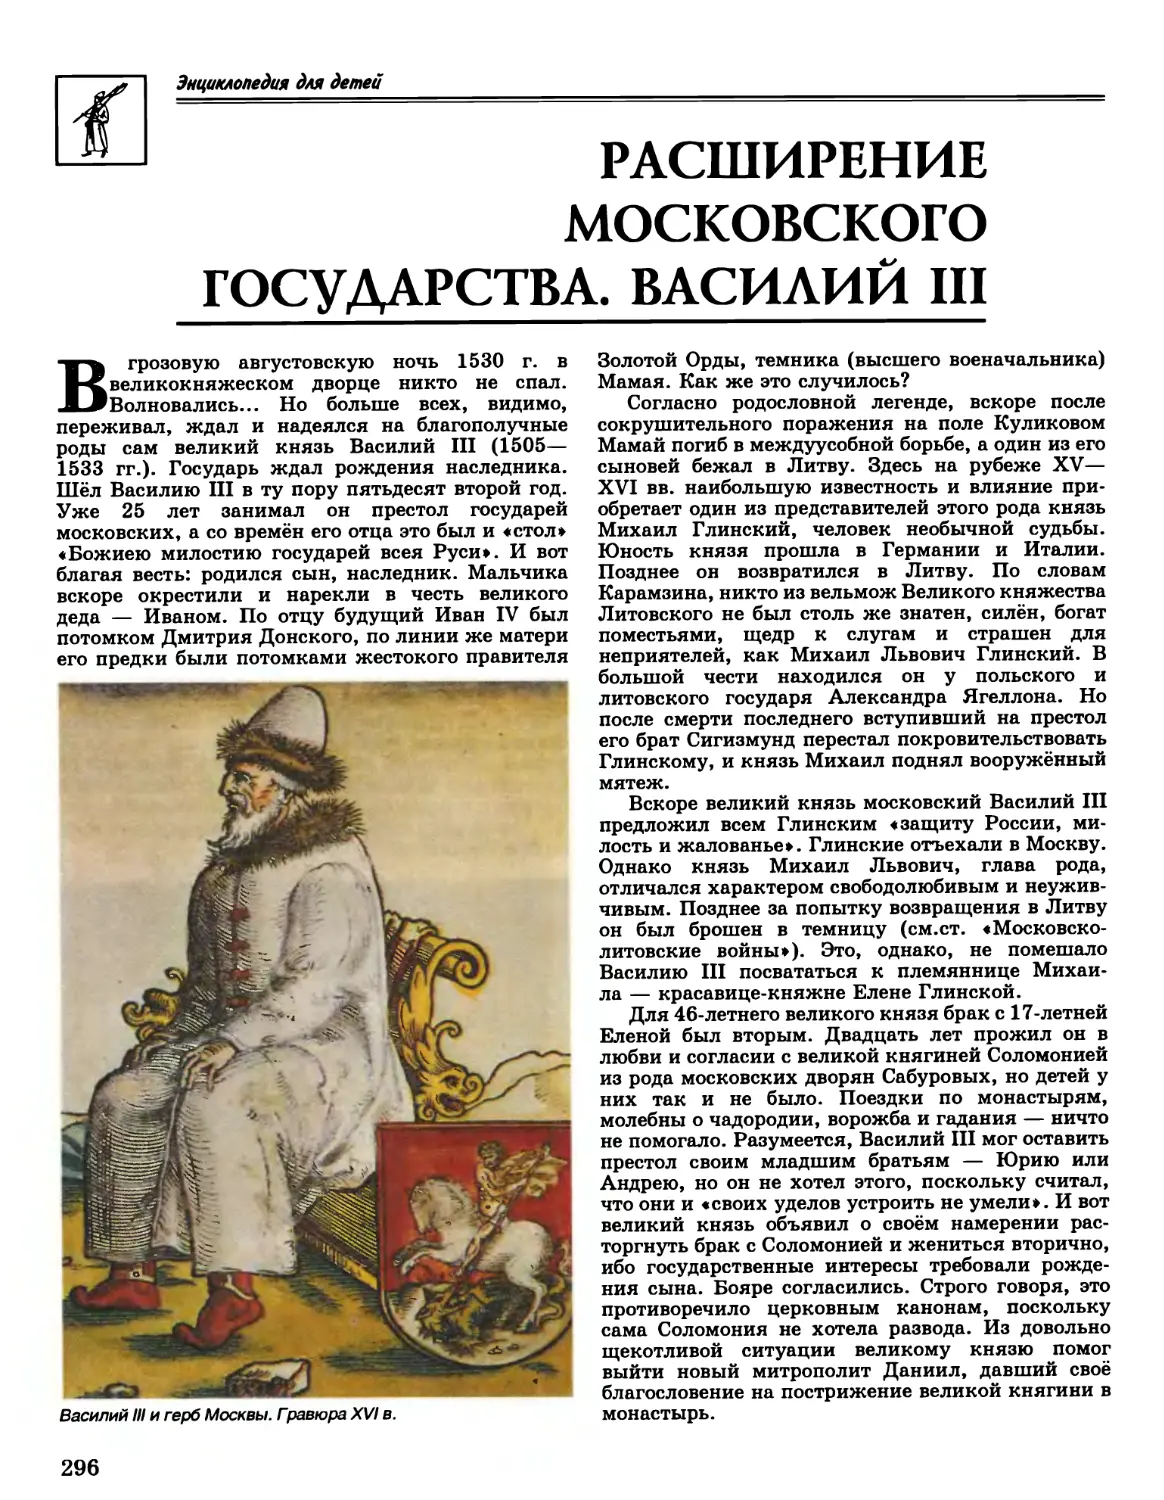 Расширение Московского государства. Василий III